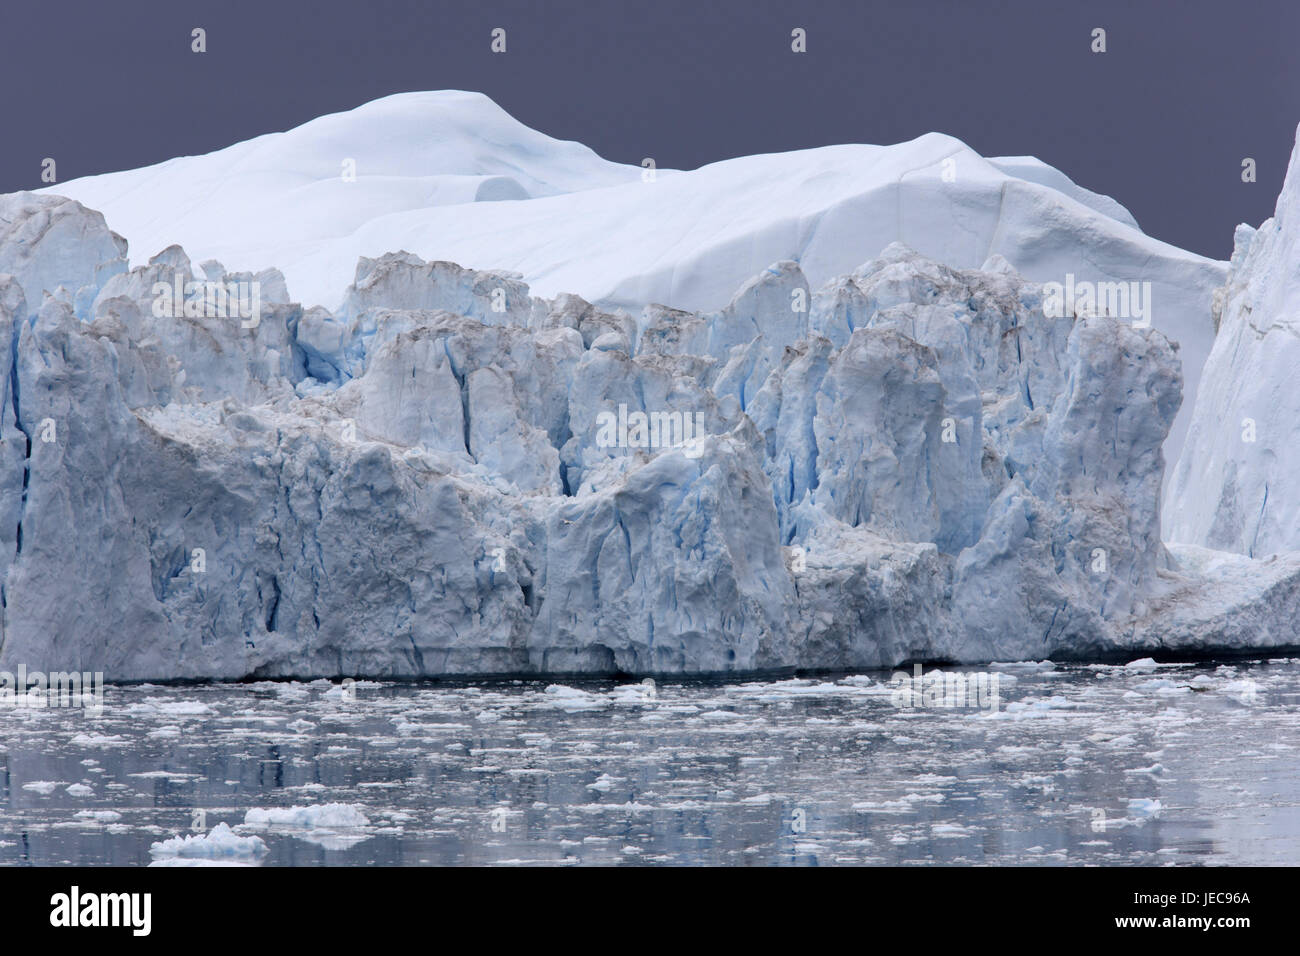 La Groenlandia, Discoteca Bay, Ilulissat, gelato fiordo, iceberg, scarpata, dettaglio, Groenlandia occidentale, destinazione, Fjord, acqua mare, ghiaccio, ghiacciaio, ghiacciaio terminazione anormale, Ilulissat Tourist Nature-gelato fiordo, patrimonio mondiale dell'UNESCO, l'Artico, costa, deserte, freddo, icily, ghiacciaio, cambiamenti climatici, floes, drift ghiaccio, Foto Stock